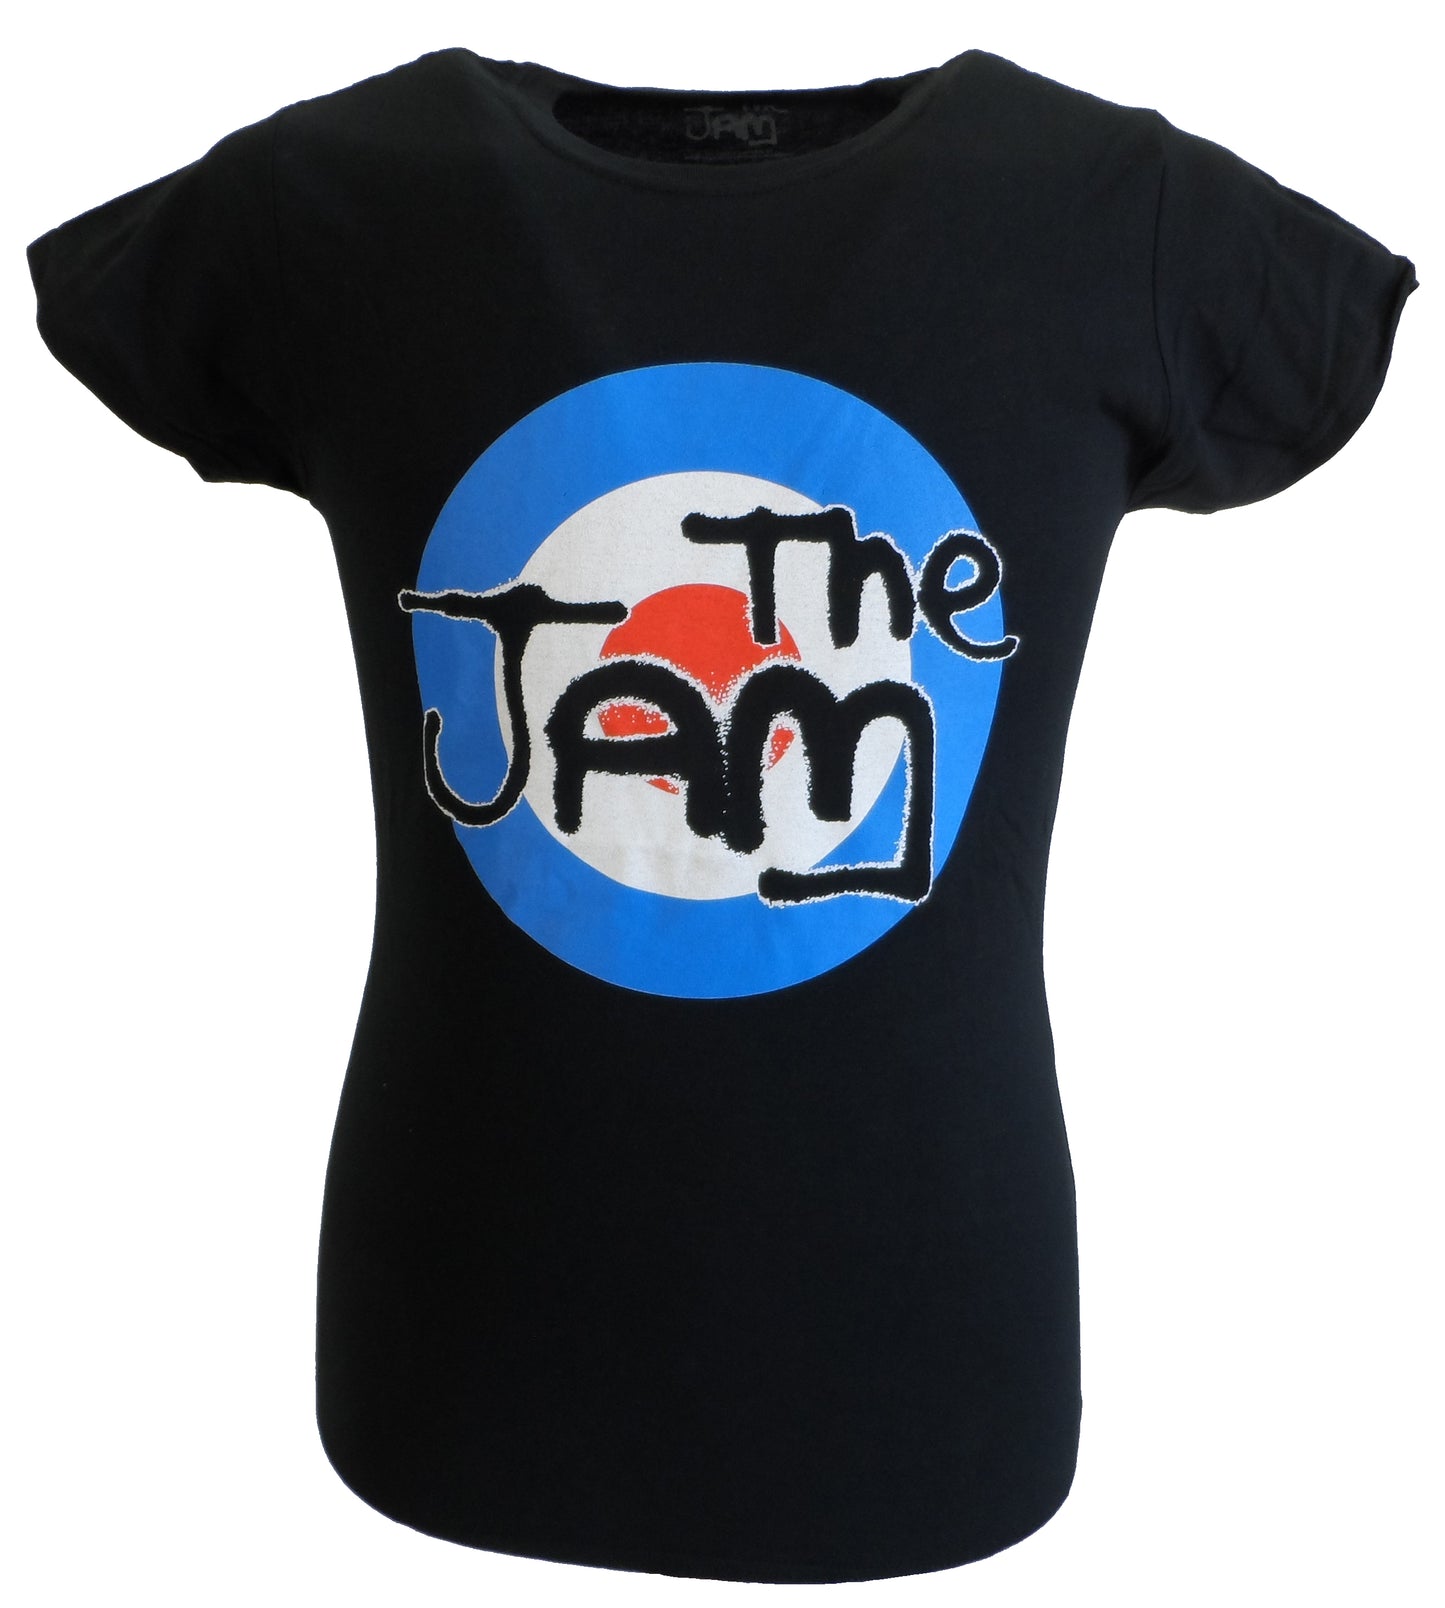 T-shirt cible noir sous licence officielle The Jam pour femme